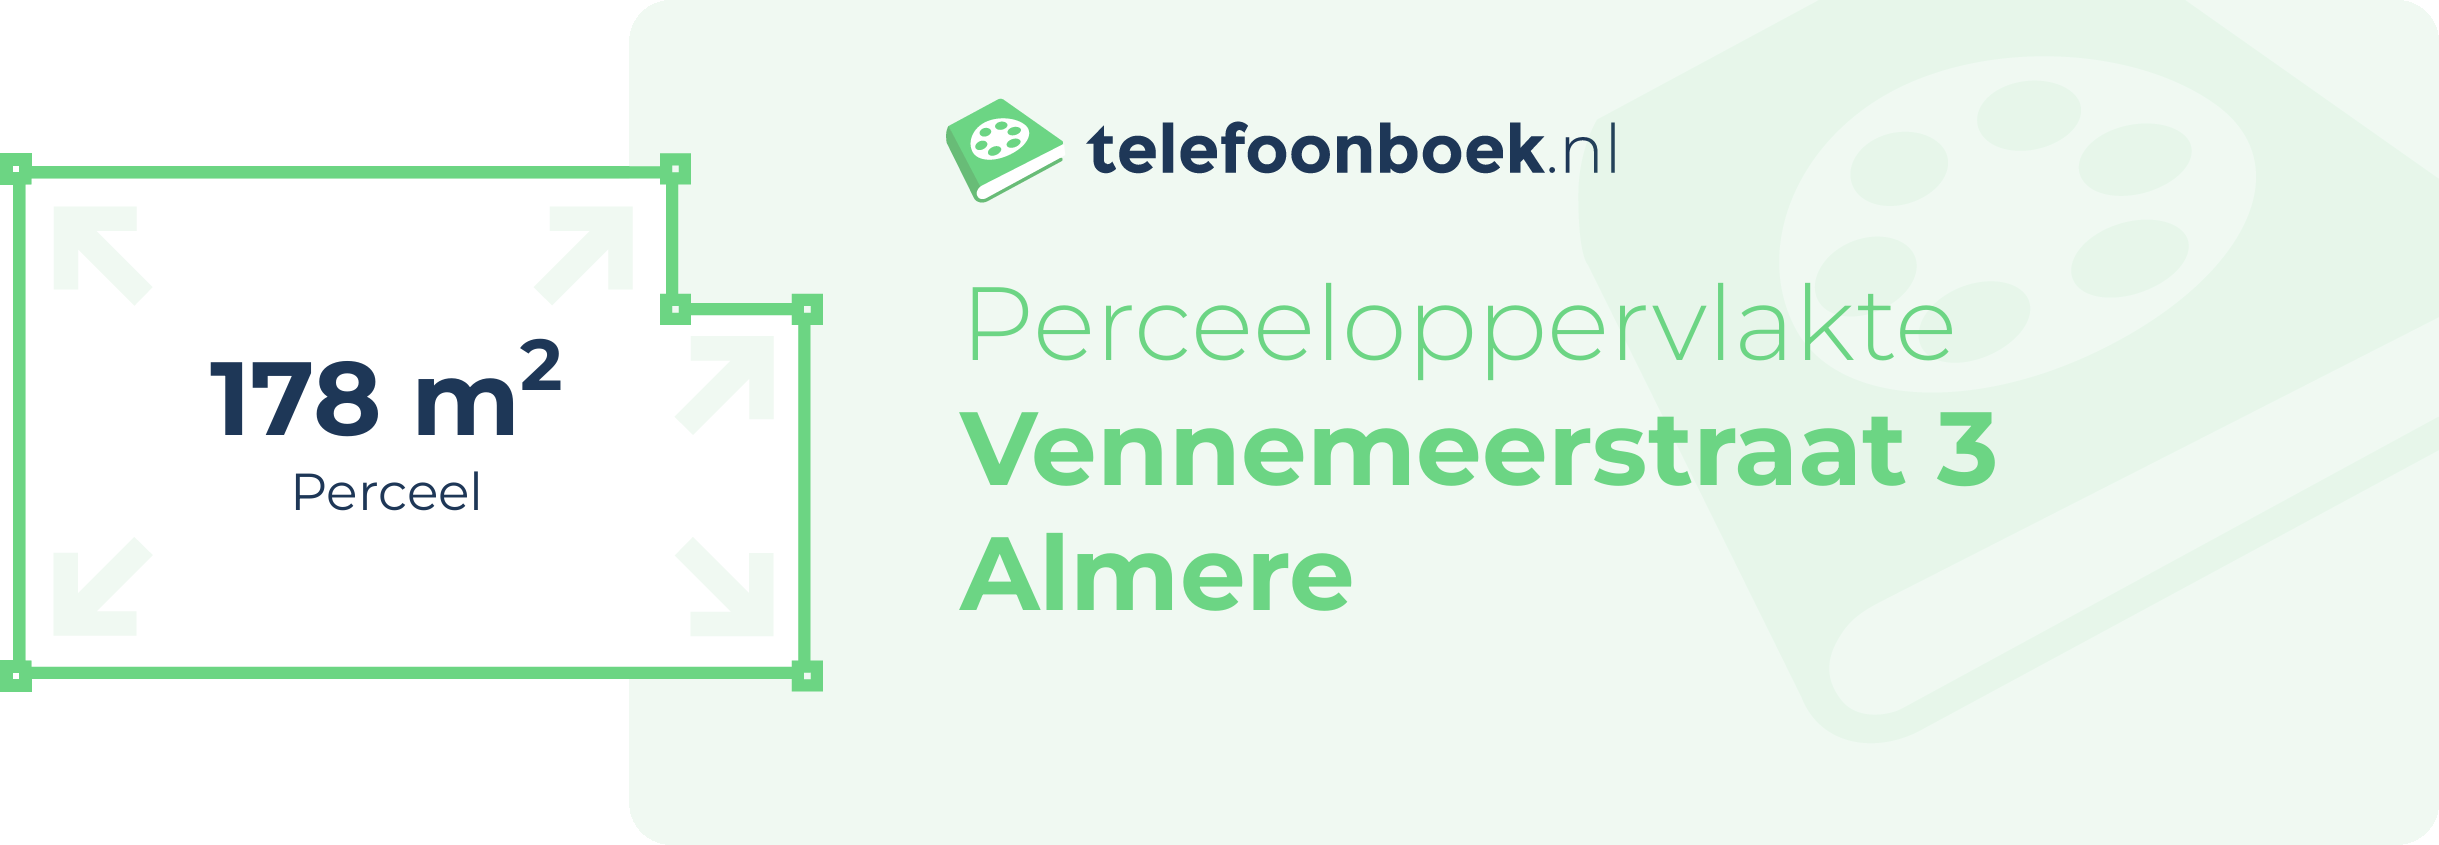 Perceeloppervlakte Vennemeerstraat 3 Almere